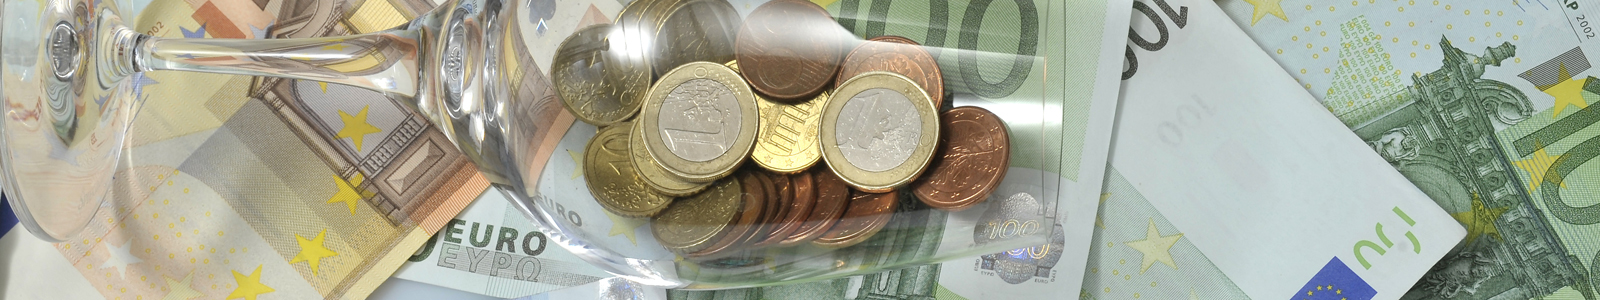 Euroscheine und Münzen im Weinglas ©Feuerbach